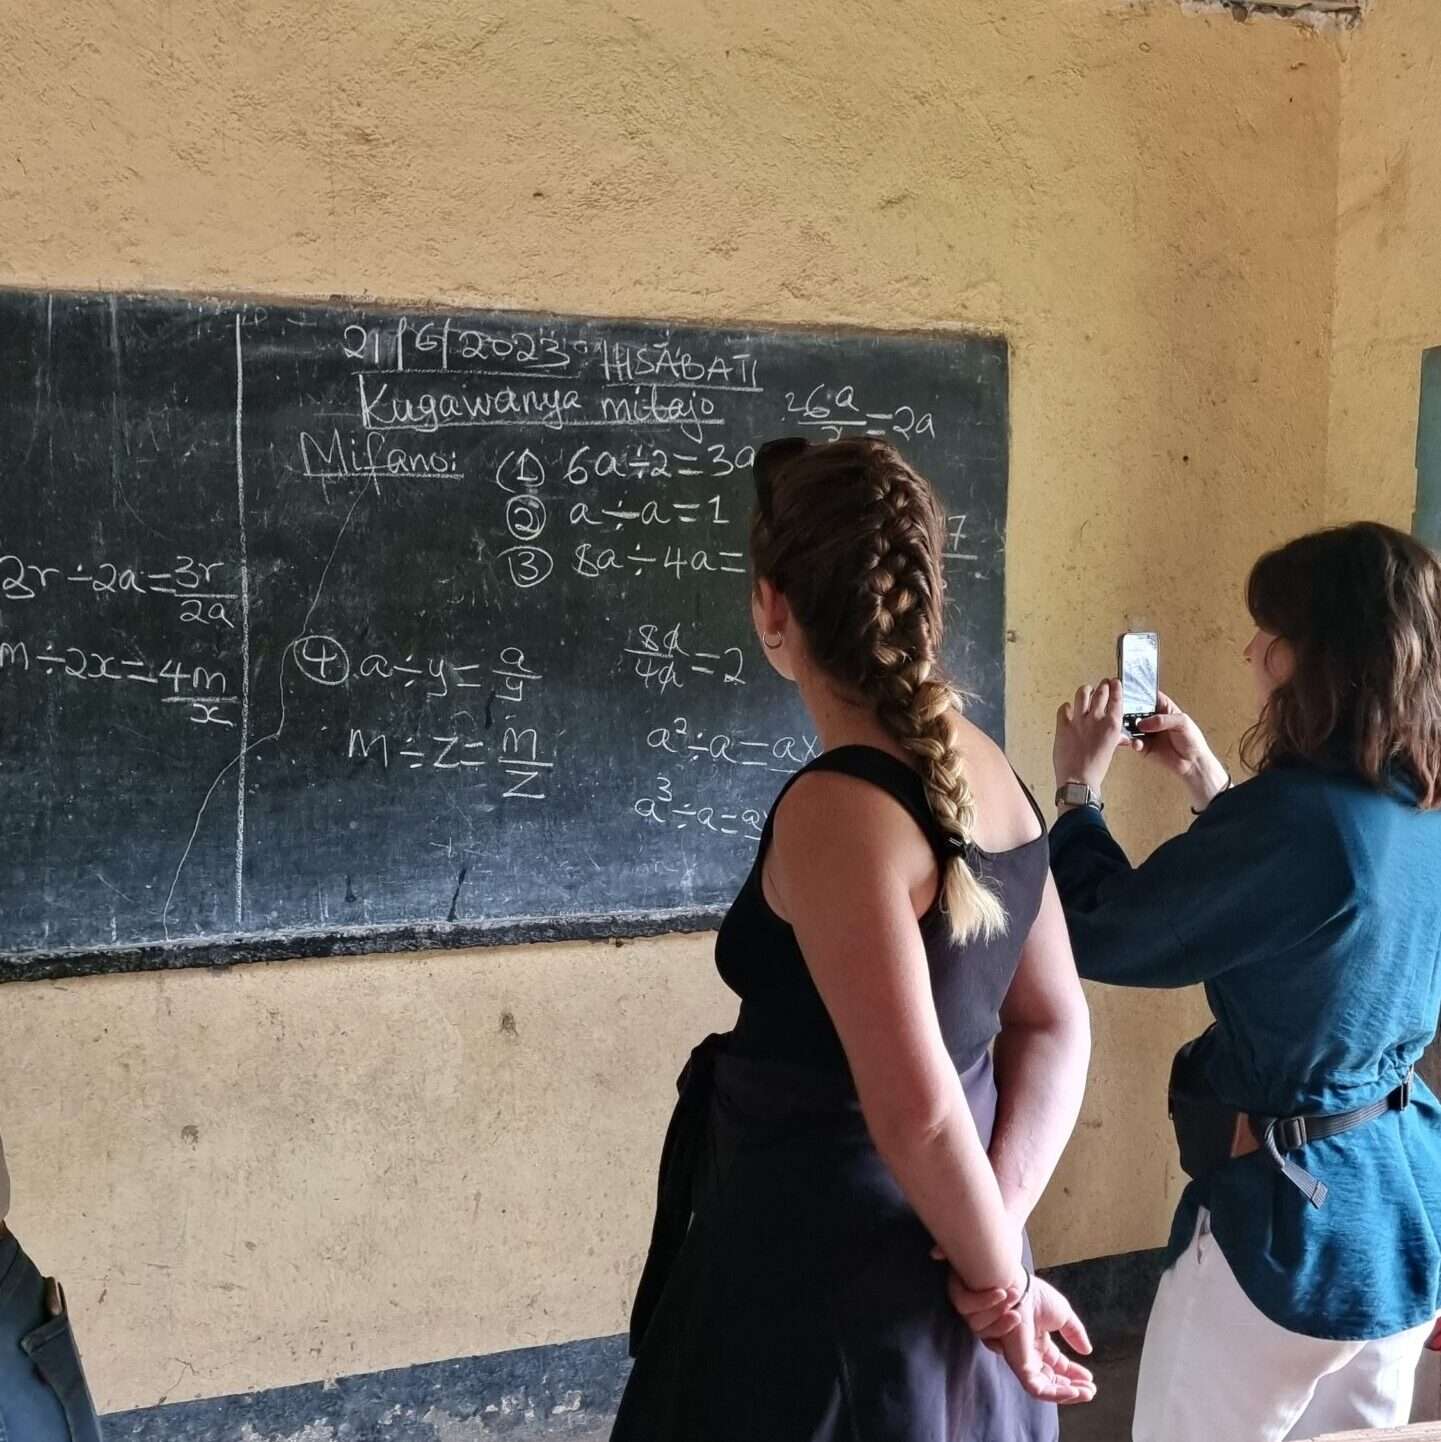 Tableau de l'école primaire avec un exercice de mathématique écrit à la craie. Deux élèves ostéopathes le prennent en photo.